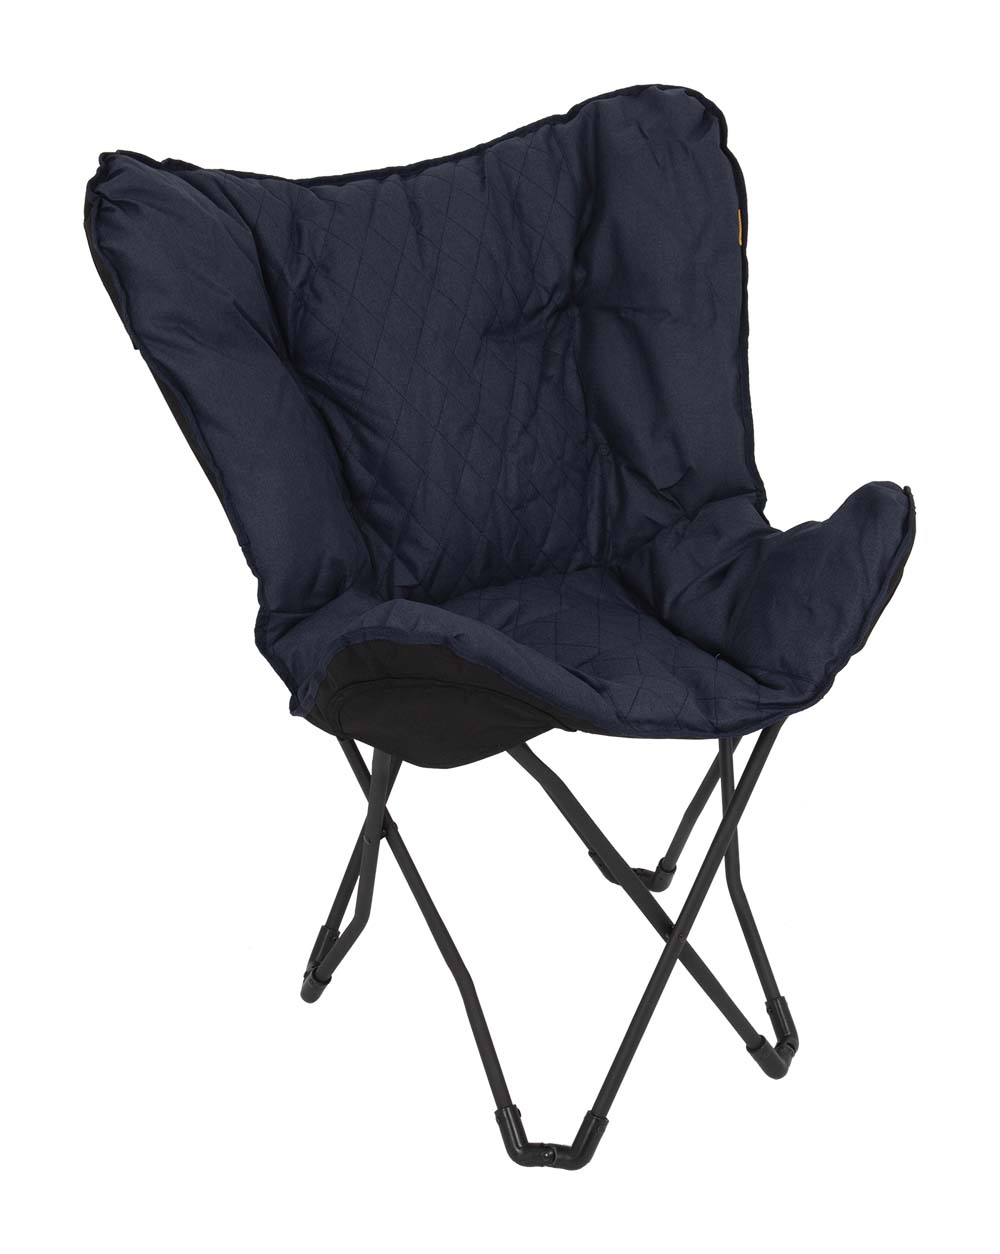 1200330 "Een 'must-have' vlinderstoel. Deze luxe stoel is voorzien van een gestikt patroon. Zeer comfortabel door de gepolsterde Cationic stof en de brede en diepe zit. Het stalen frame is eenvoudig in te klappen waardoor de stoel makkelijk mee te nemen is, inclusief draagtas. Een ideale stoel voor in de tuin of op de camping, maar ook op het balkon en in de woonkamer."